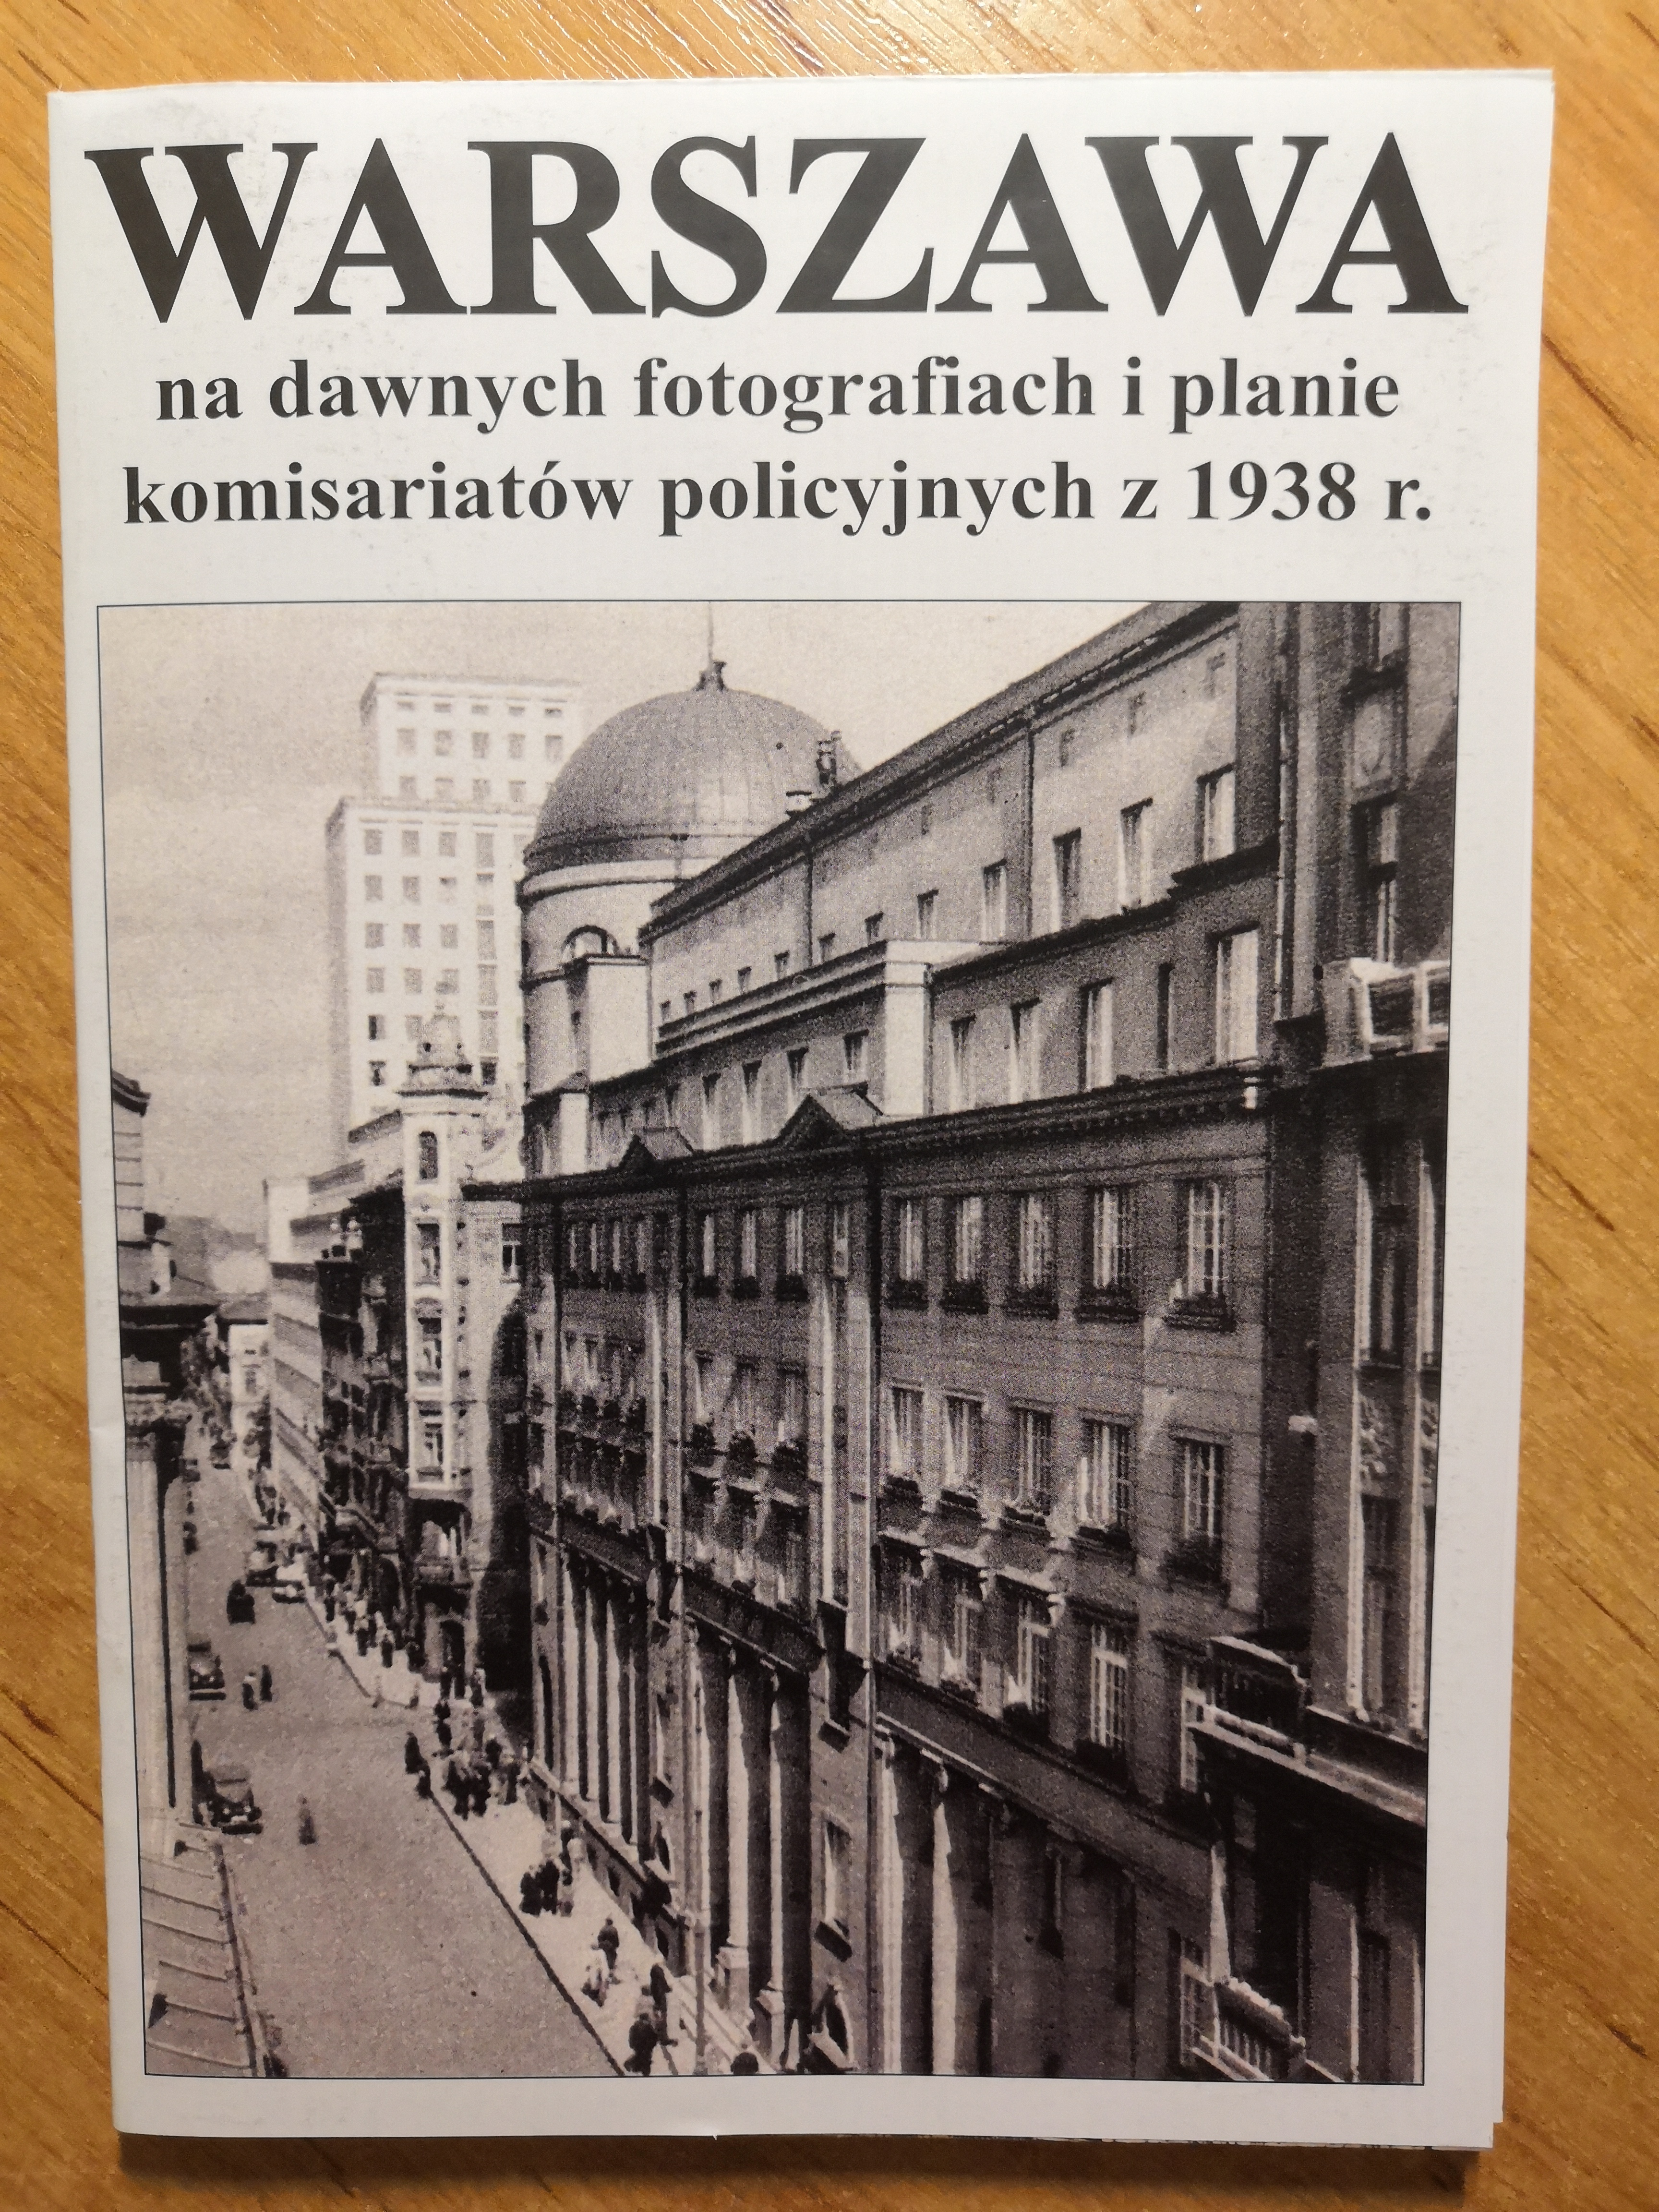 Warszawa na dawnych fotografiach i planie komisariatów policyjnych z 1938 r. (J.A.Krawczyk)